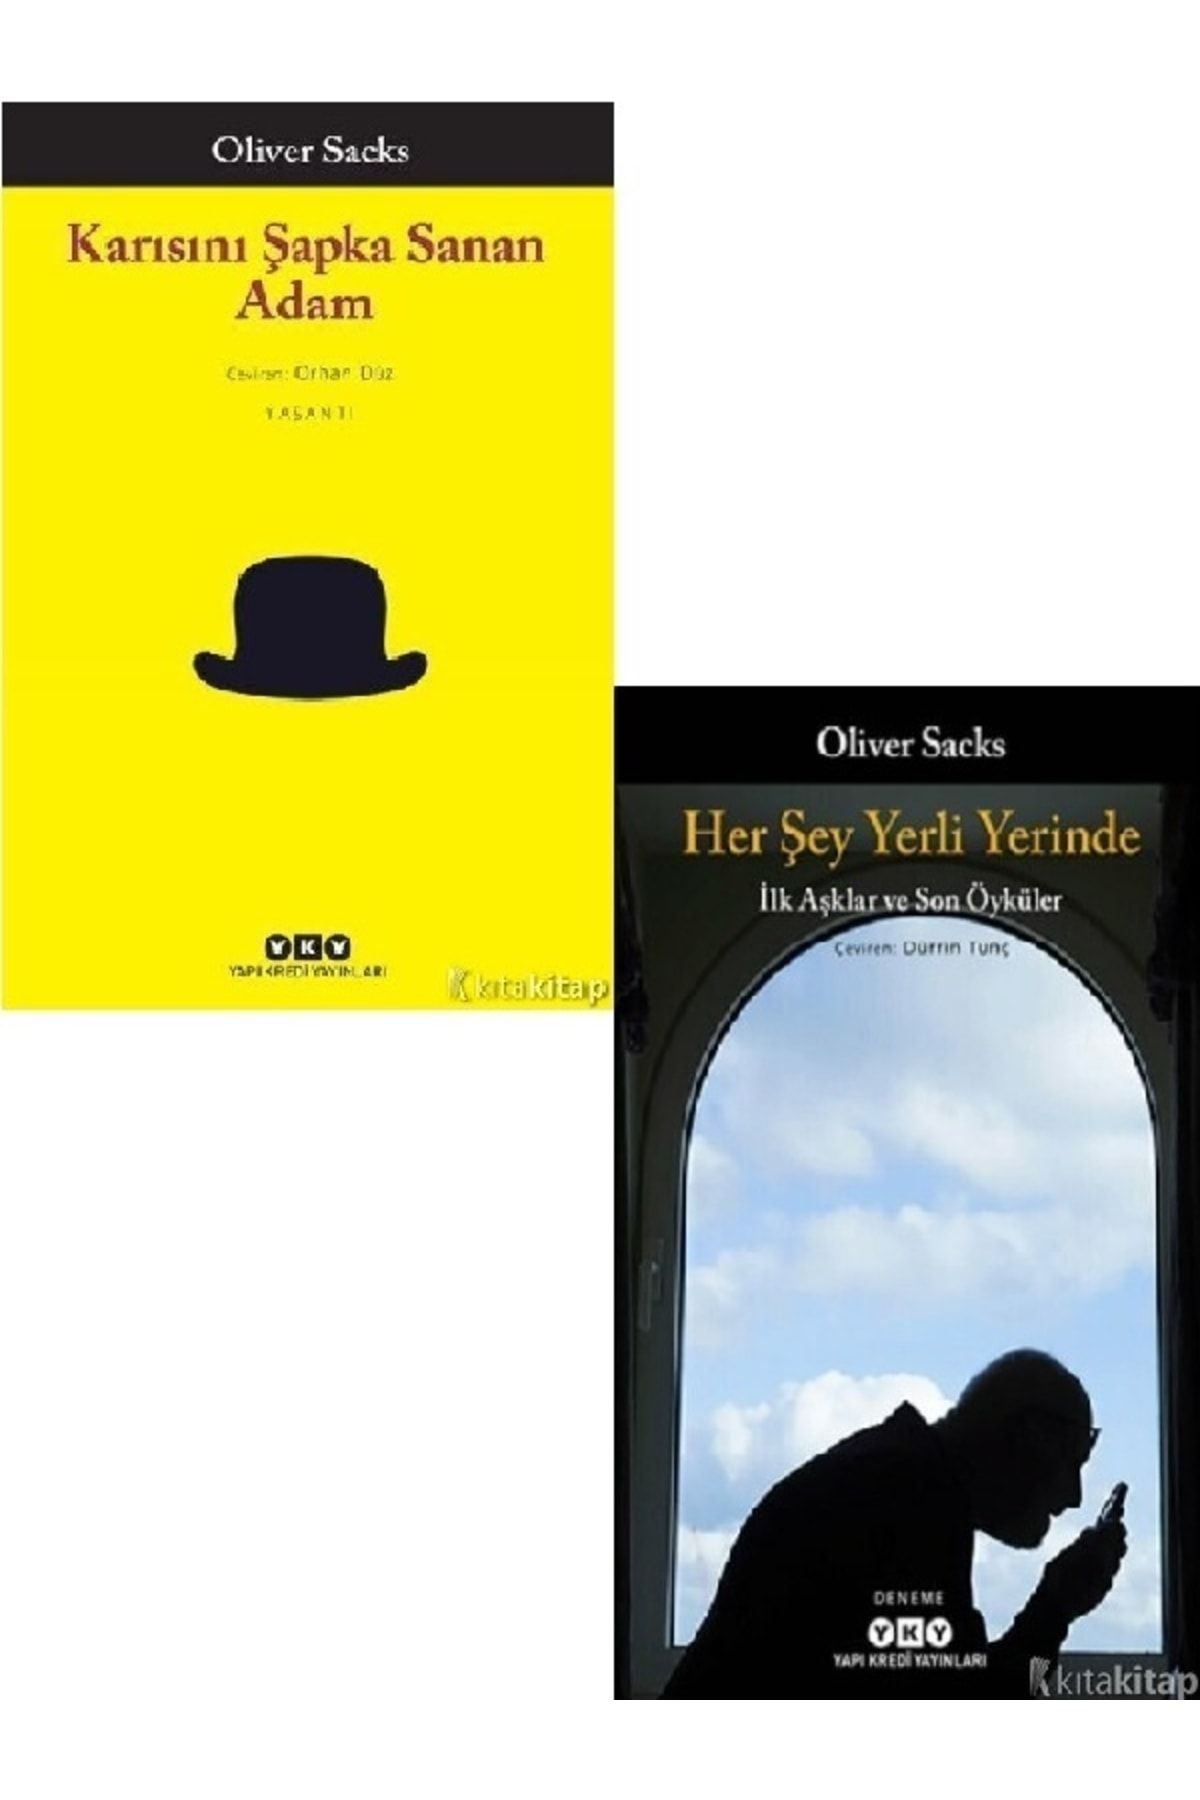 Kronik Kitap Karısını Şapka Sanan Adam - Her Şey Yerli Yerinde - Oliver Sacks 2 Kitap Set